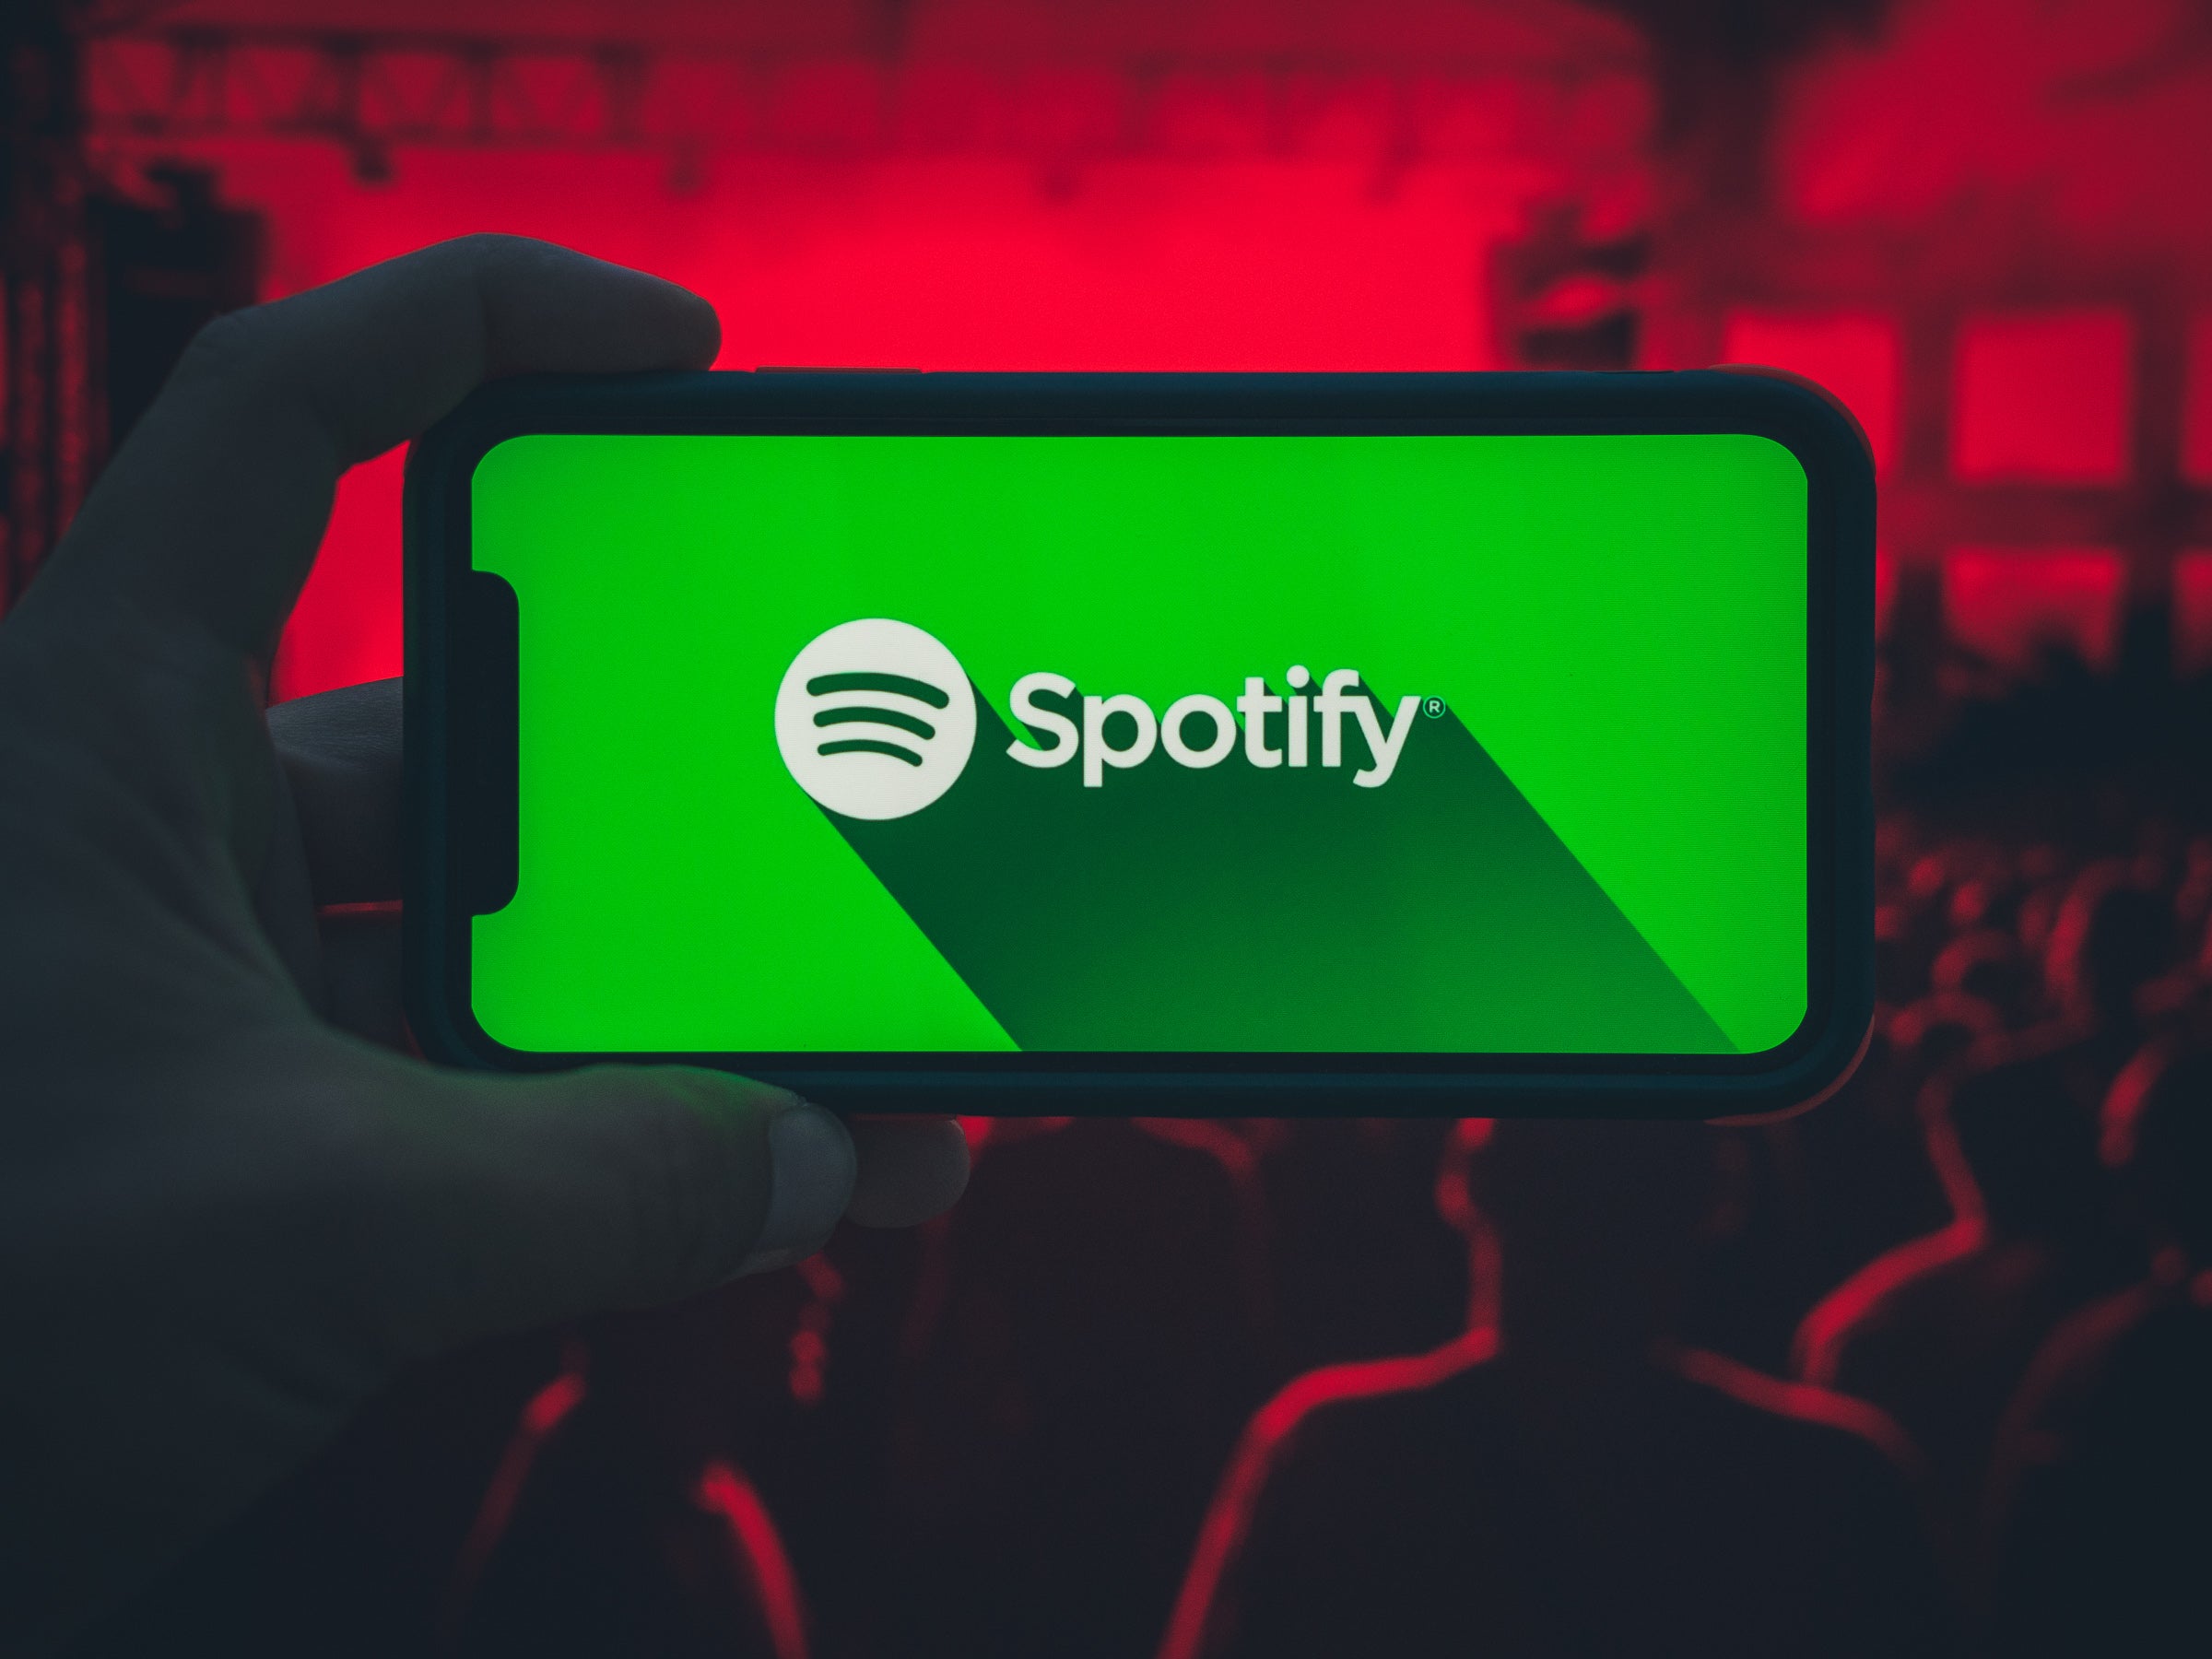 #Spotify: Nach heftiger Kritik folgt die Preiserhöhung